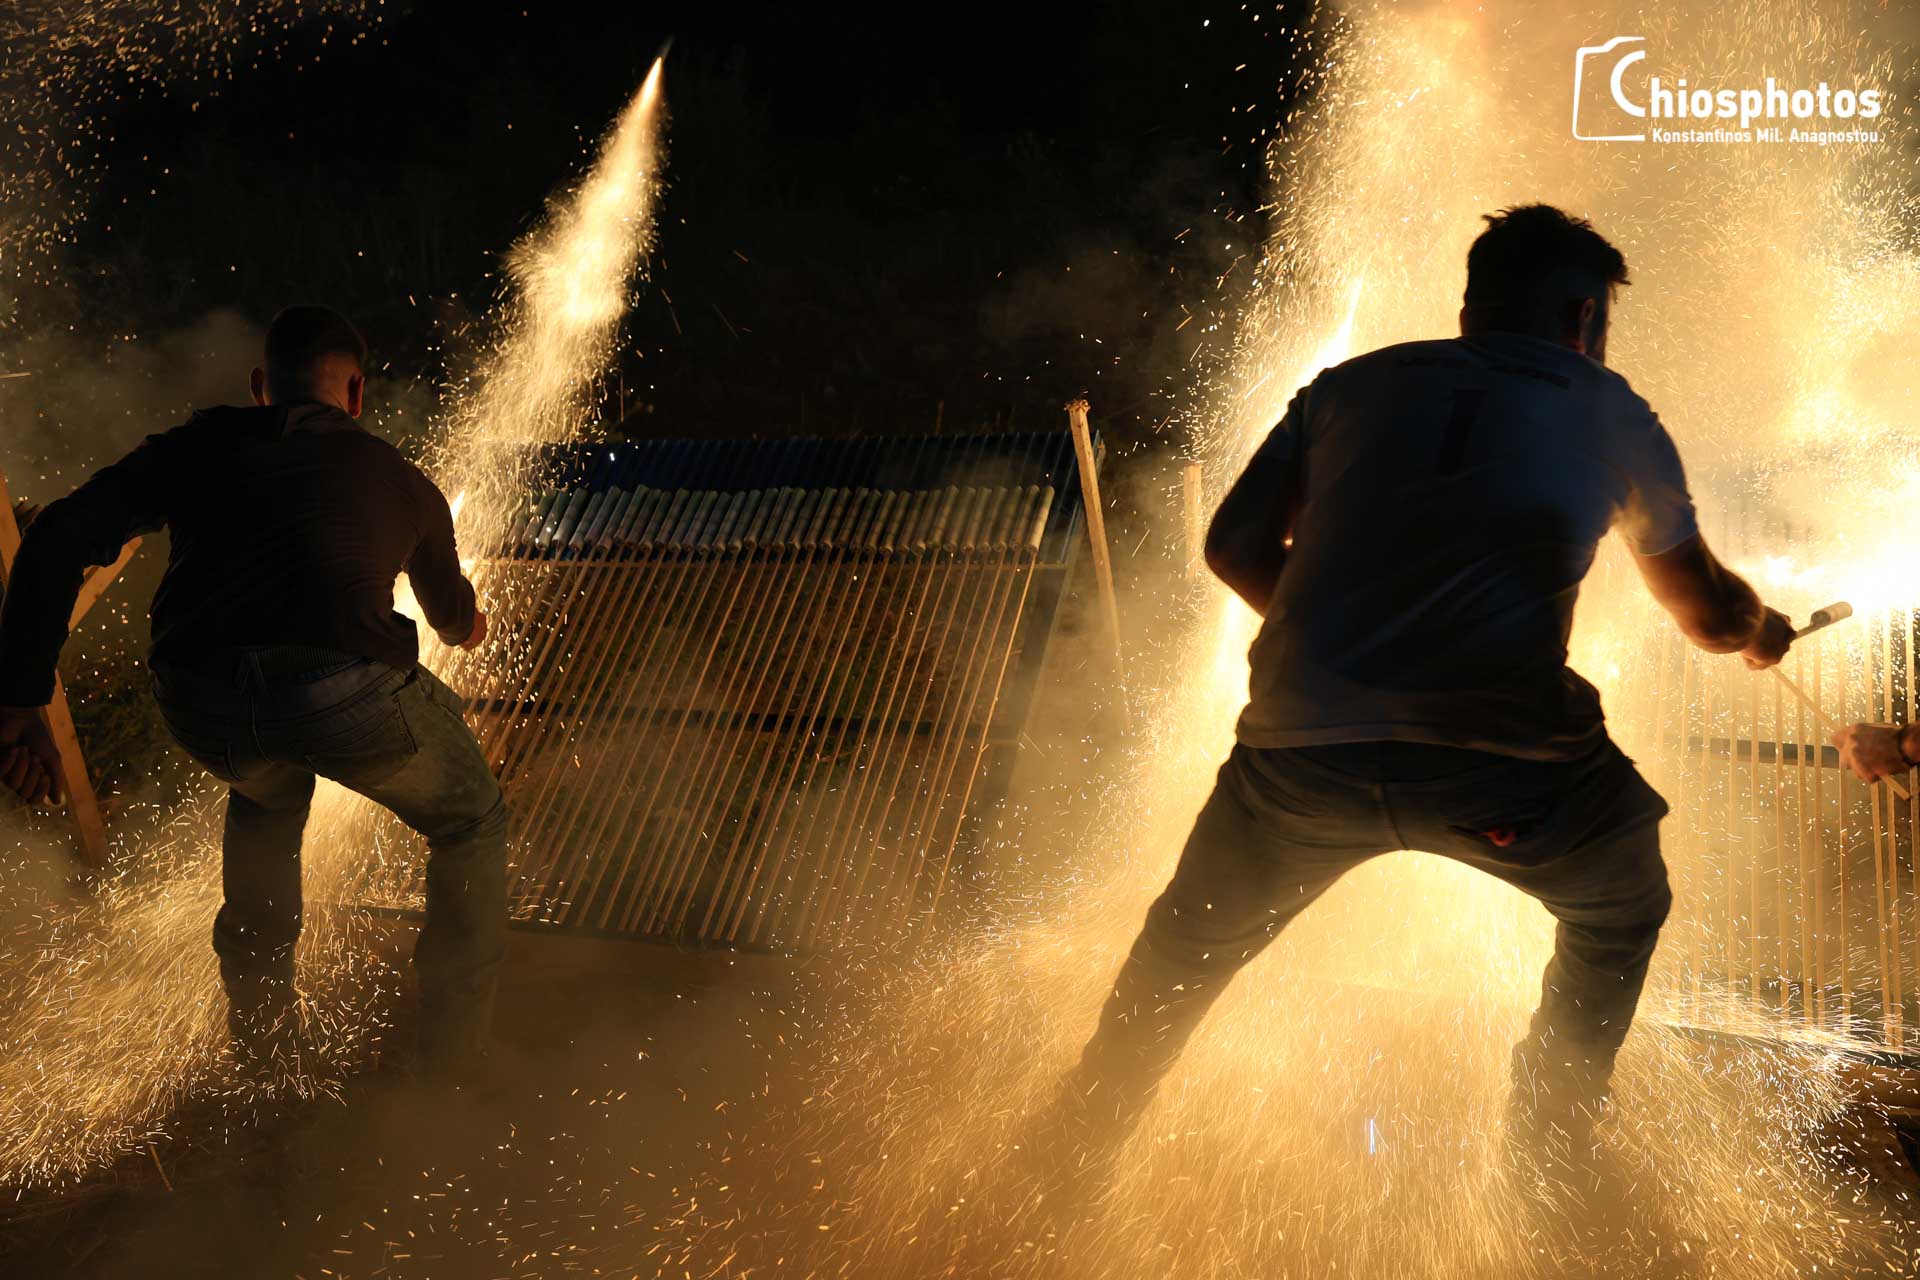 χίος: εντυπωσιακός ρουκετοπόλεμος με χιλιάδες επισκέπτες – φωτο και βιντεο